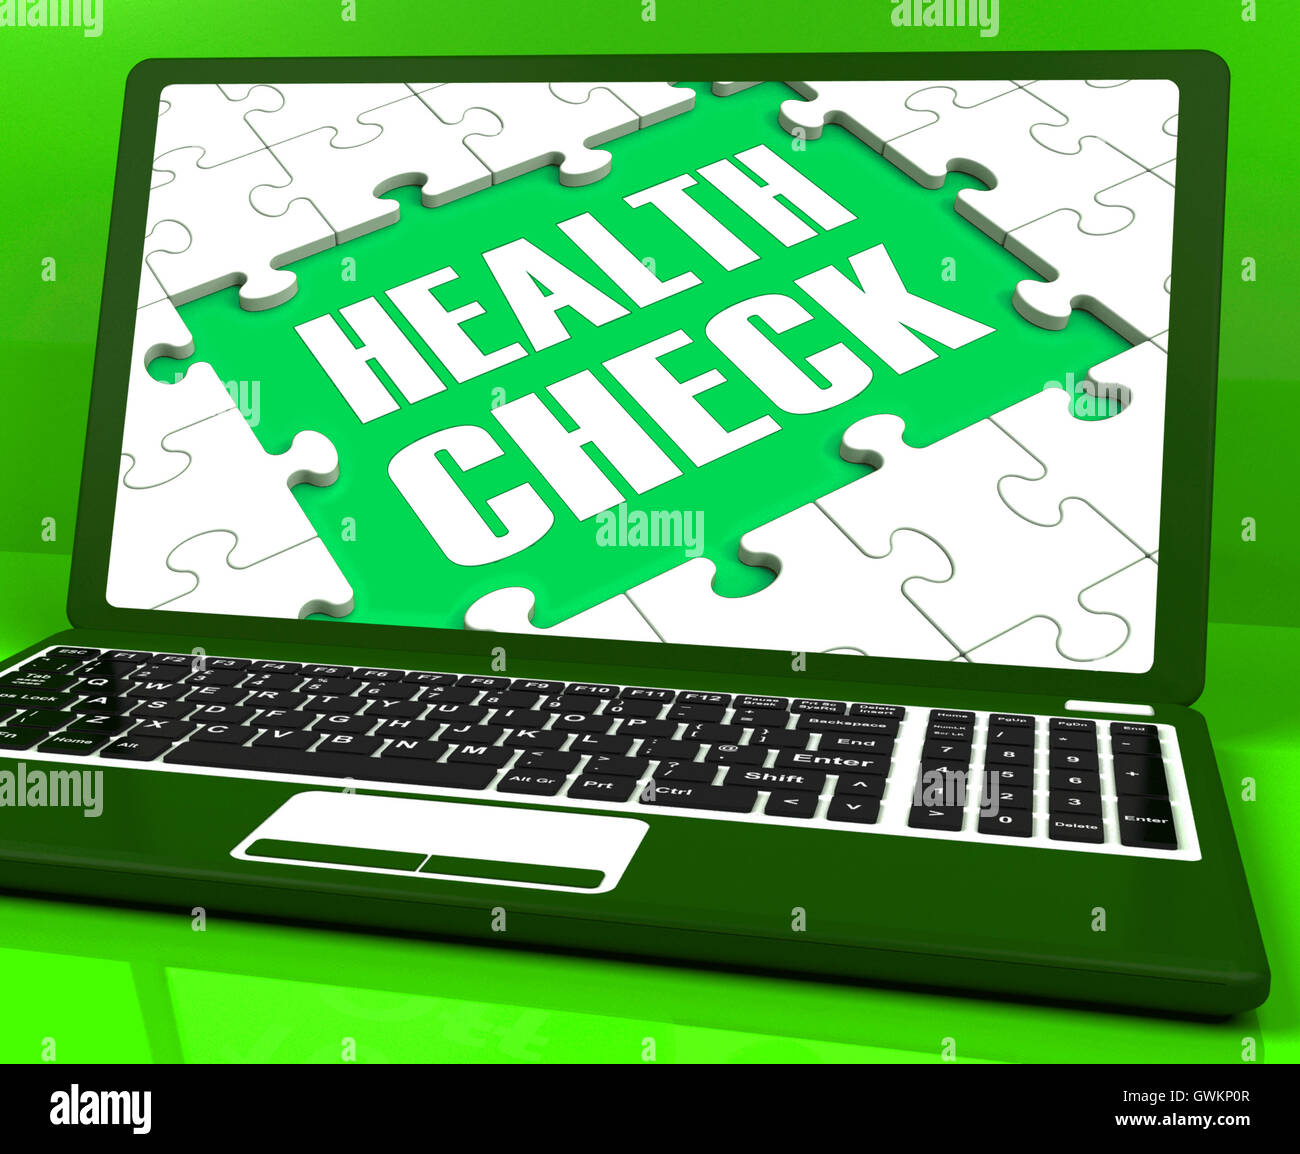 Health Check portátil muestra condición médica pruebas online Foto de stock